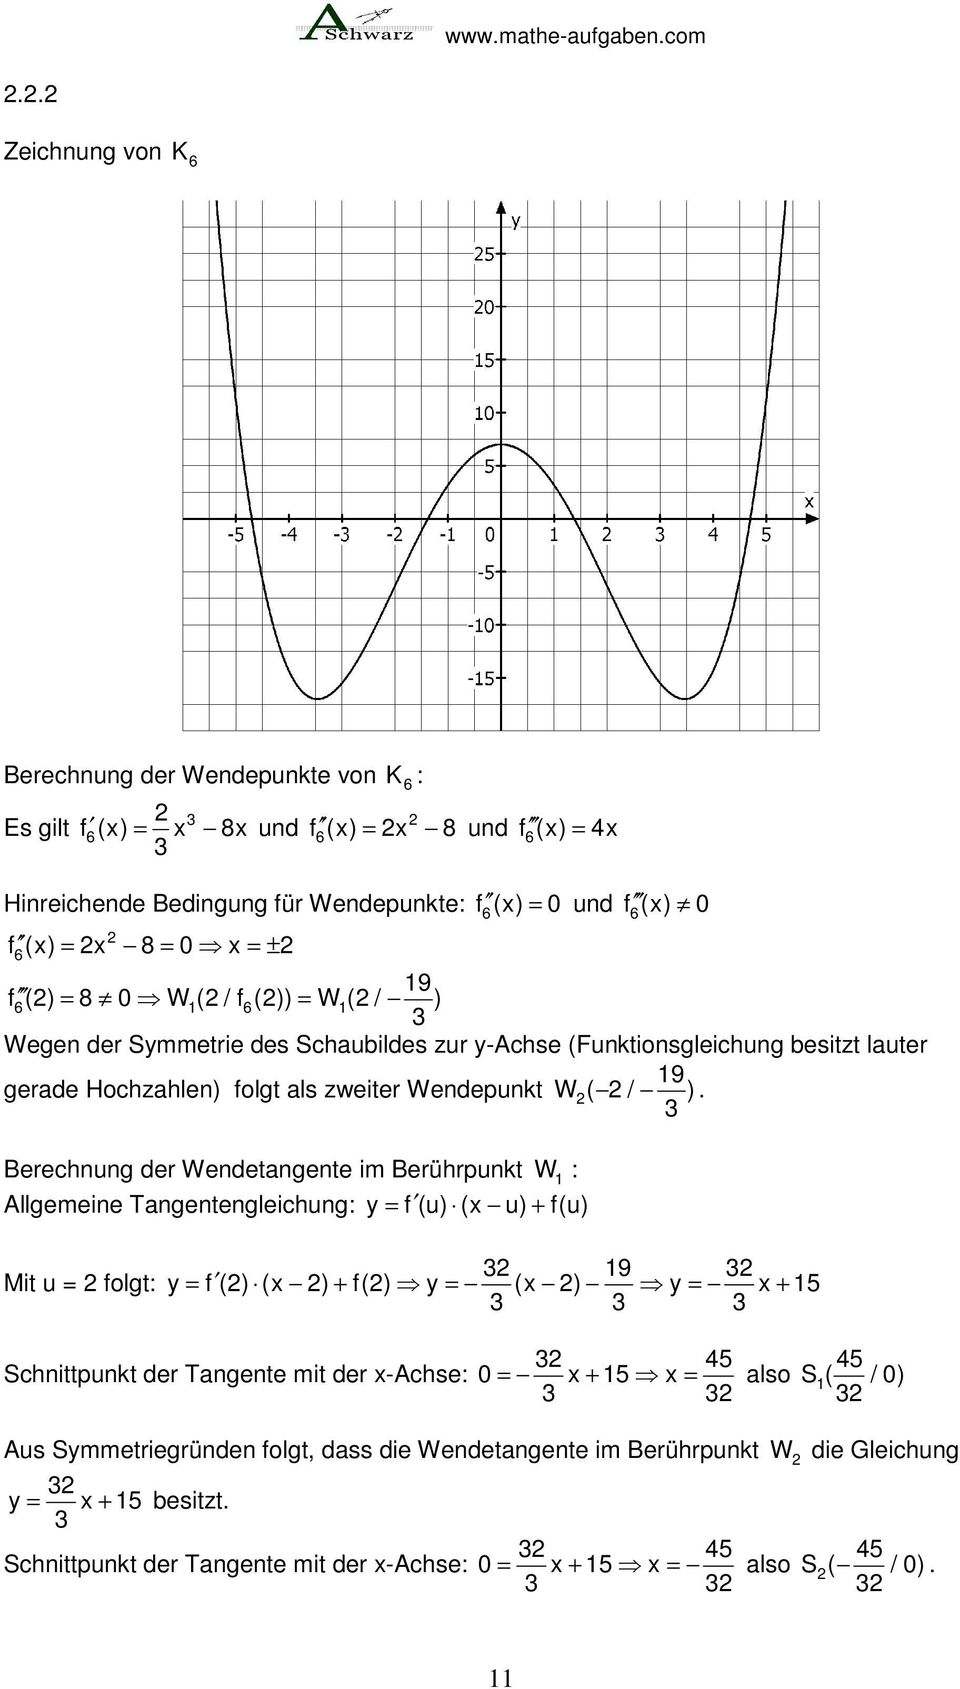 Berechnung der Wendeangene im Berührpunk W : Allgemeine Tangenengleichung: y = f (u) (x u) + f(u) Mi u = folg: 9 y = f () (x ) + f() y = (x ) y = x + 5 Schnipunk der Tangene mi der x-achse: